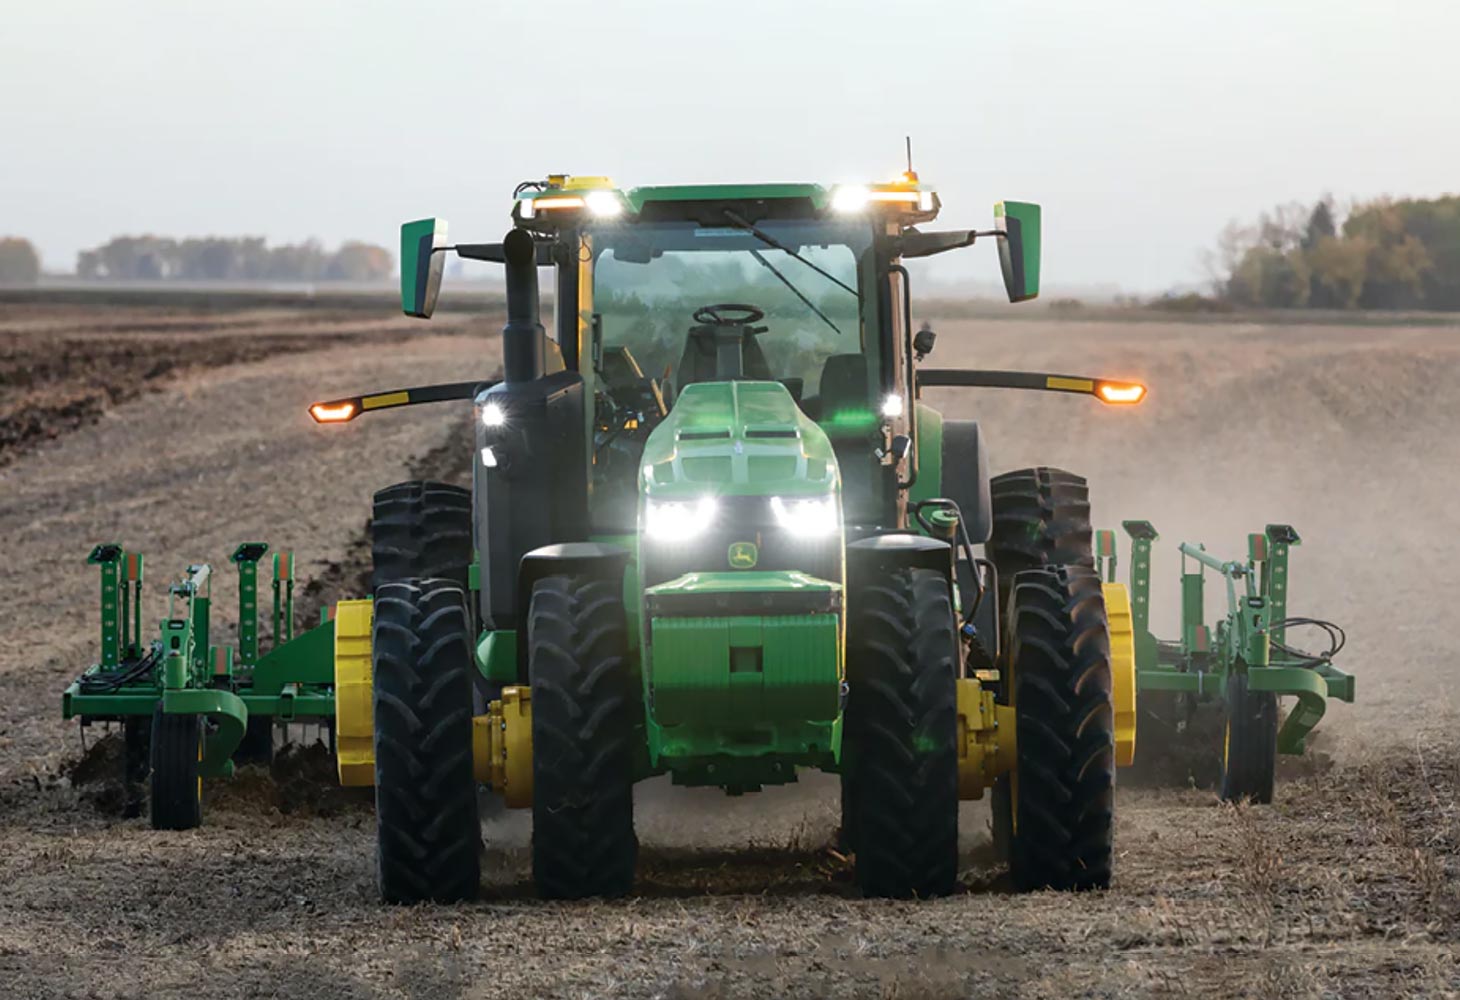 John Deere unveils fully autonomous tractor at CES 2022